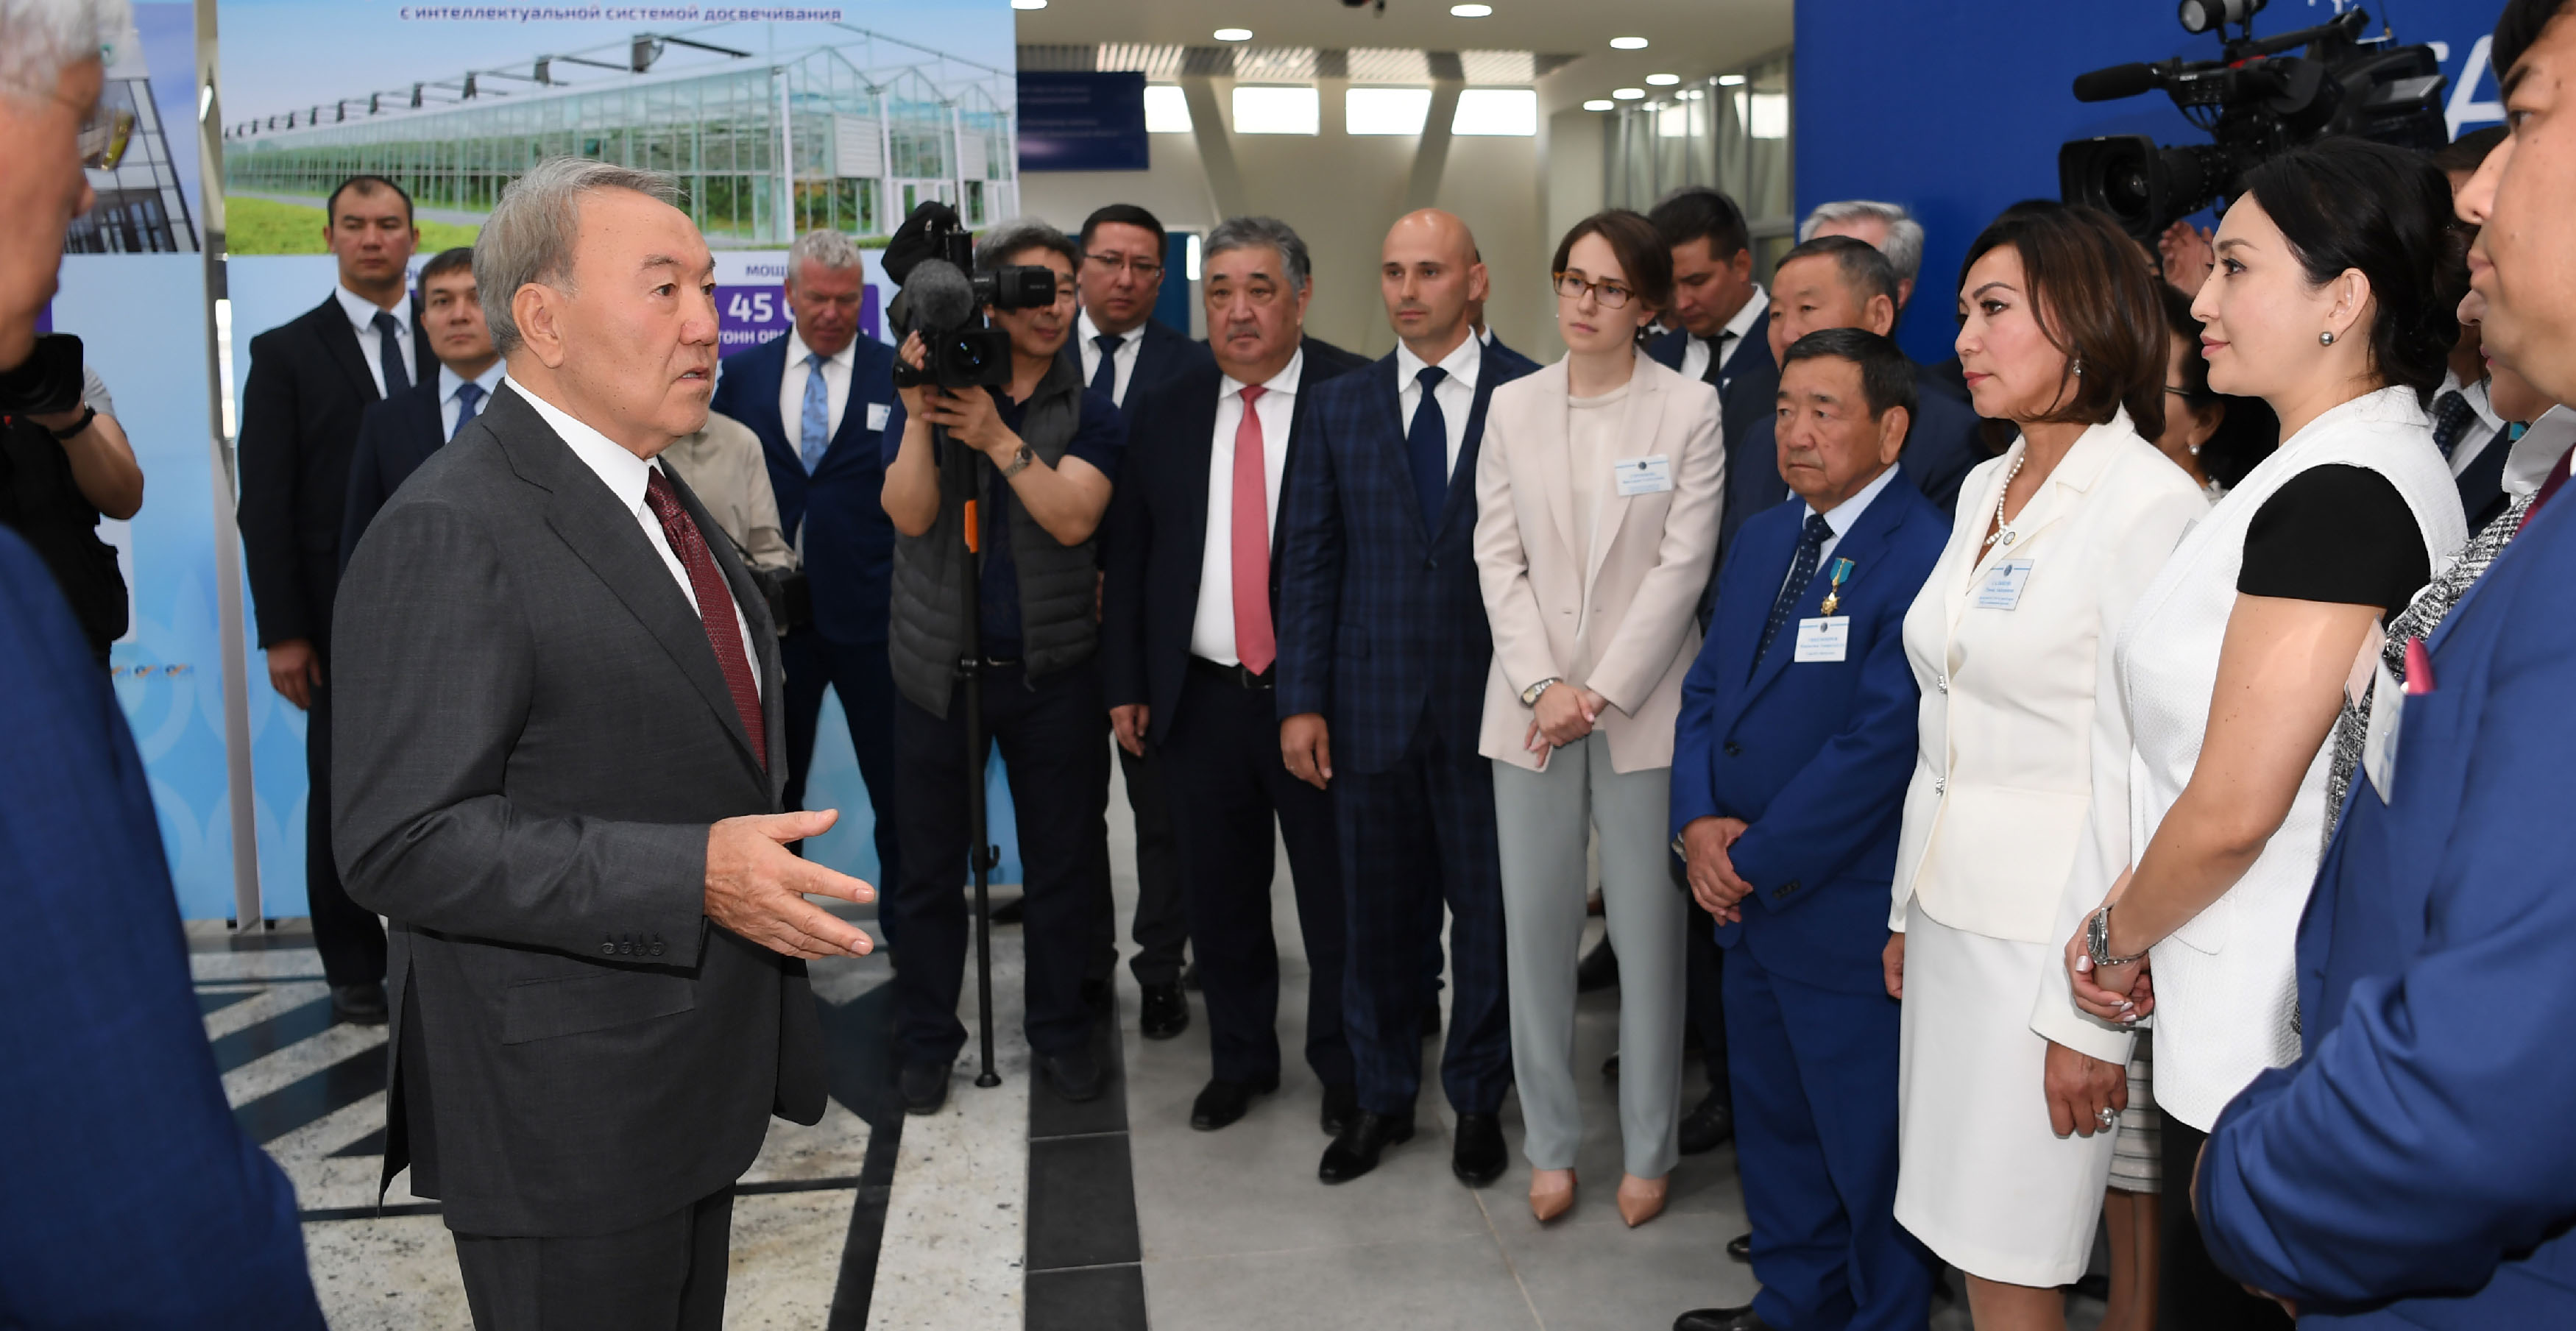 Нурсултан Назарбаев встретился с представителями бизнес-сообщества Алматинской области